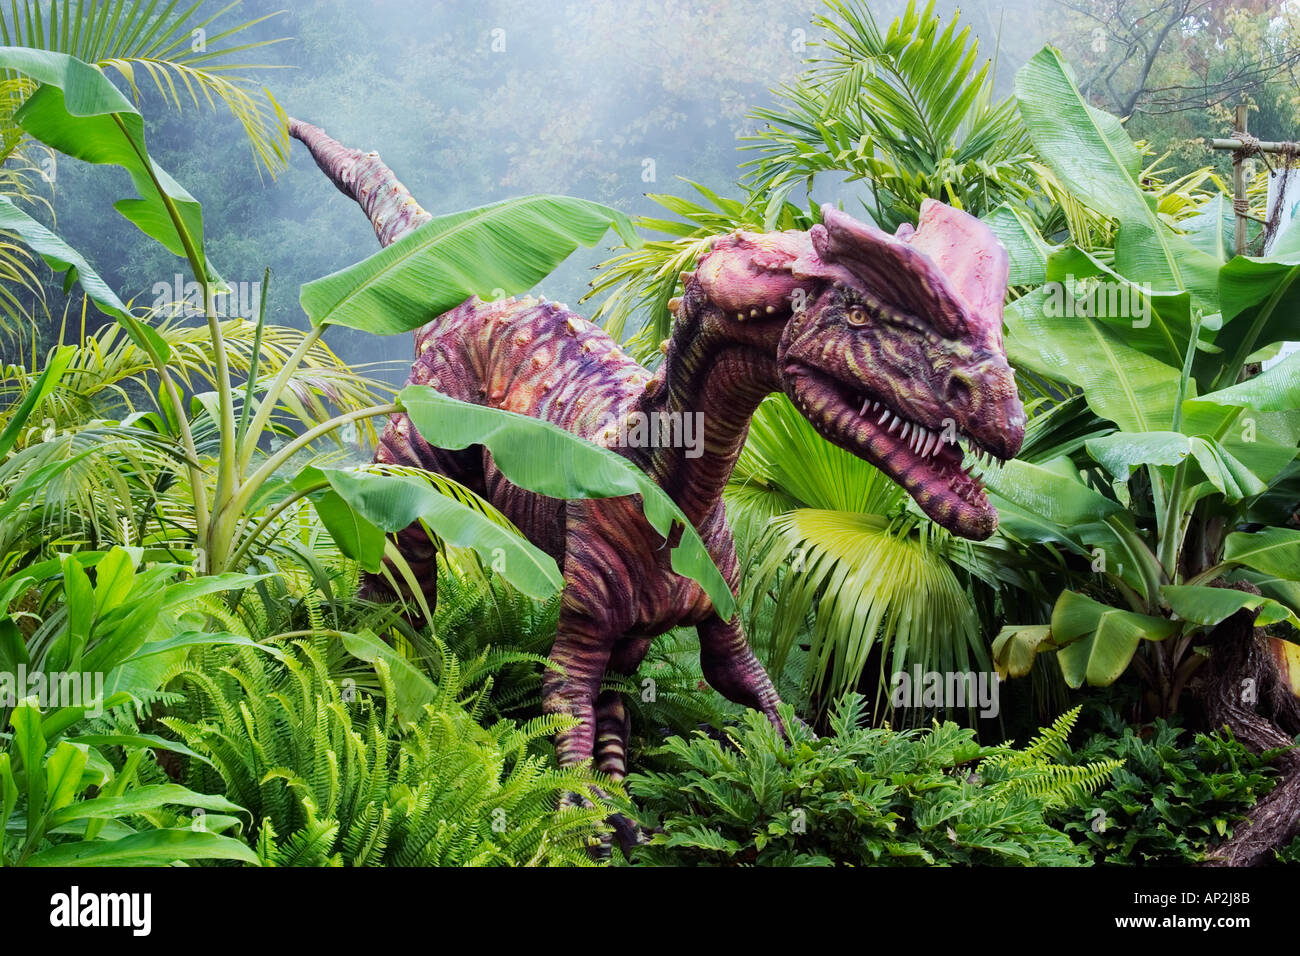 Dilophosaurus qui signifie dinosaure reptile à crête double à partir de la période jurassique précoce va à une longueur de 20 pieds et w Banque D'Images